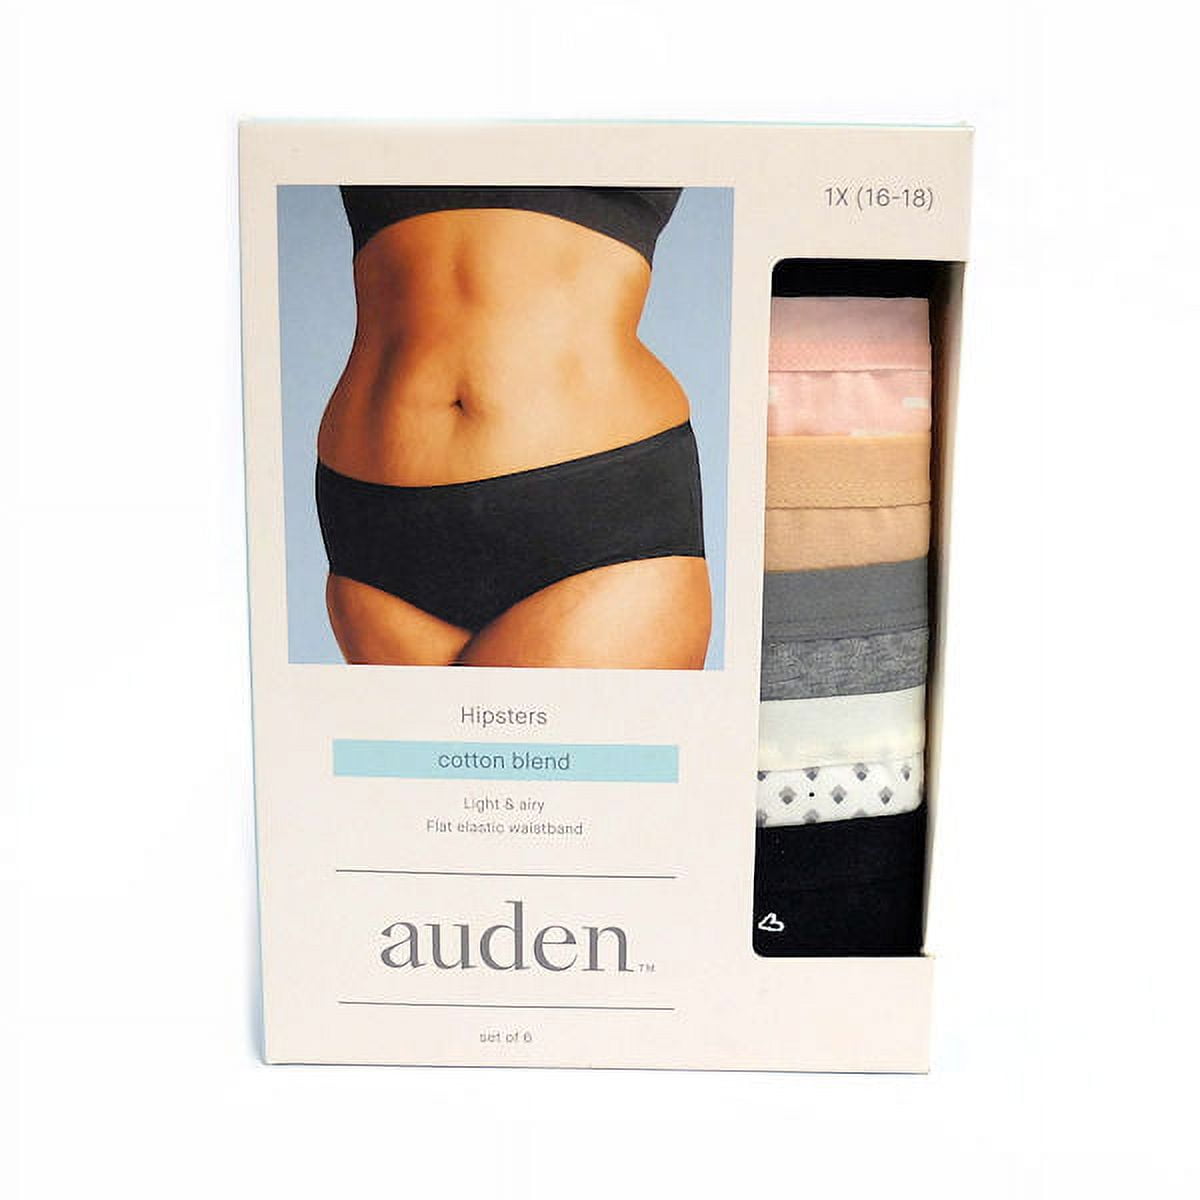 Auden Women's Plus Size Hipsters Cotton Blend, 1X (16-18) - 6-Pack 